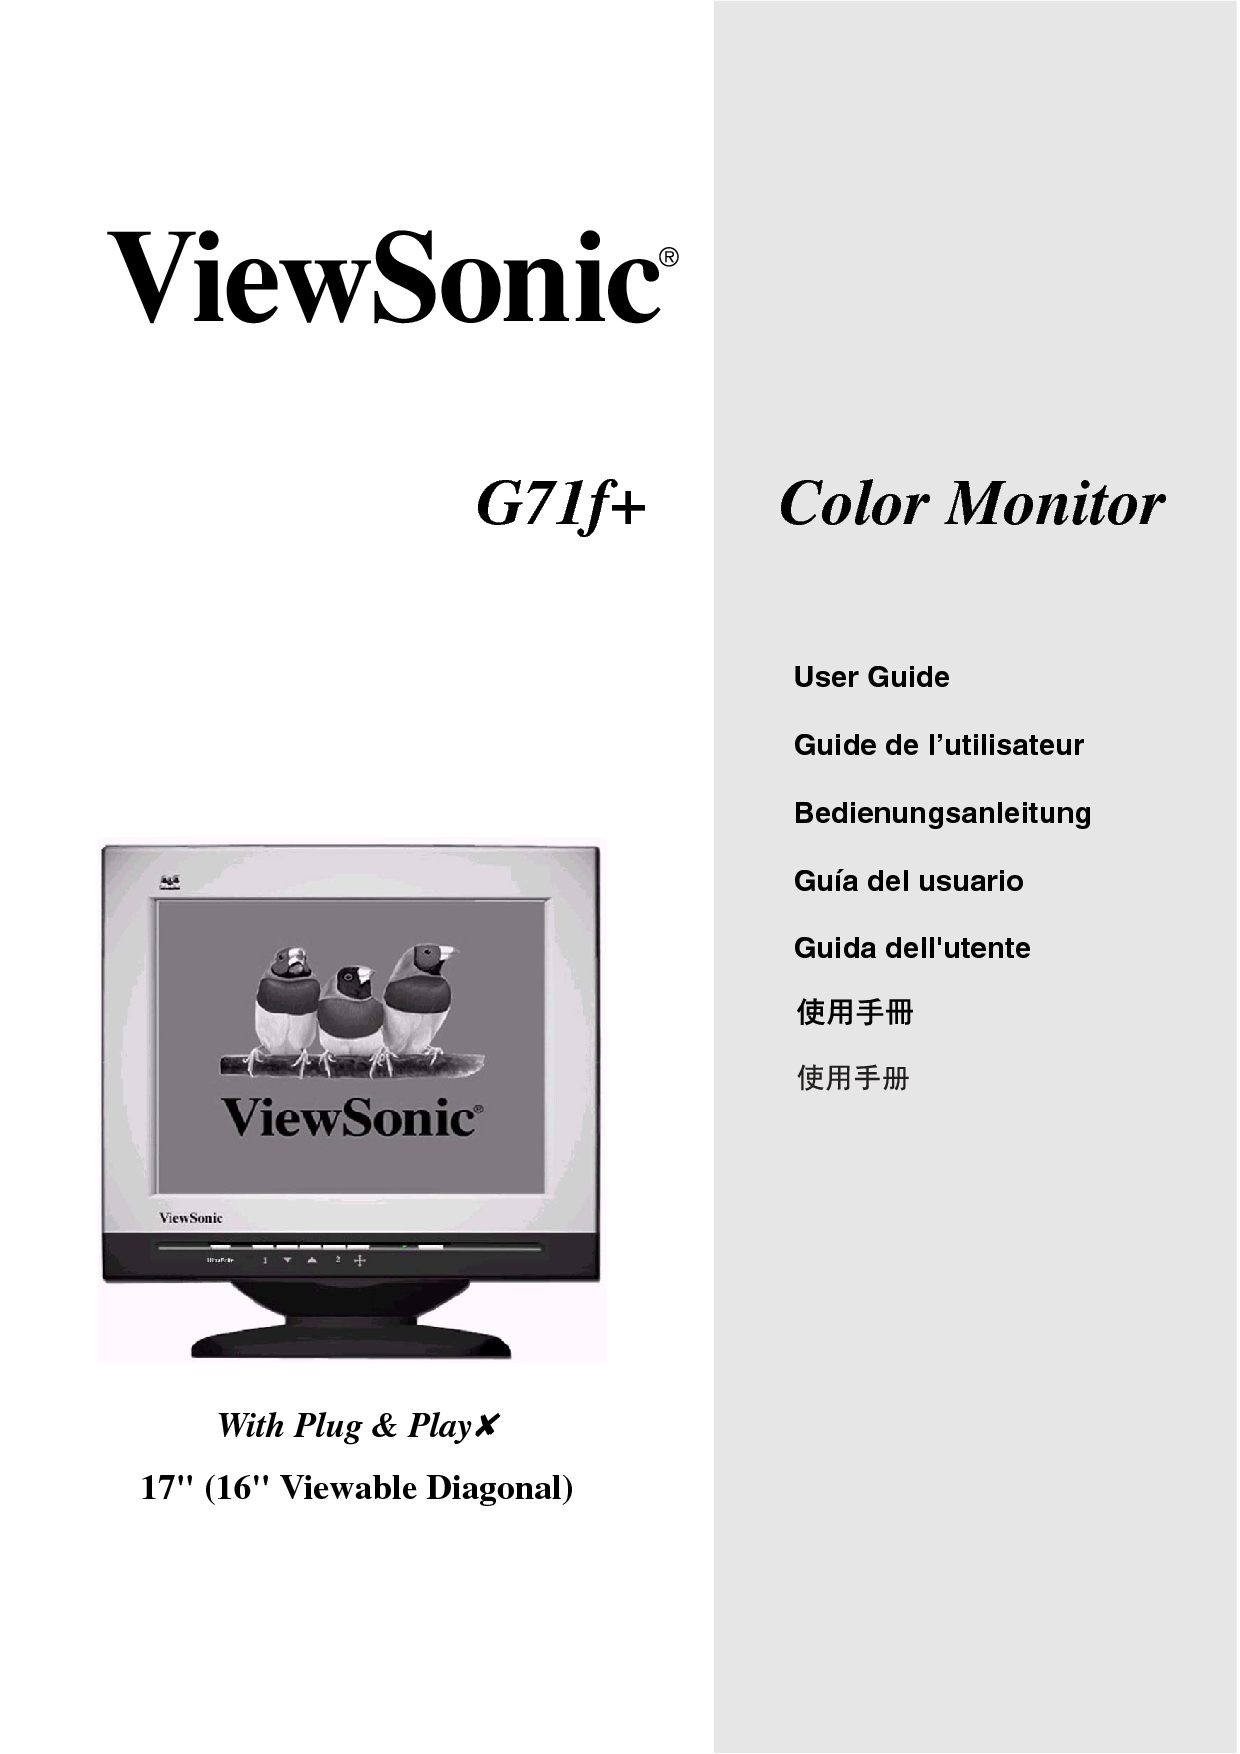 优派 ViewSonic G71f+ 使用手册 封面